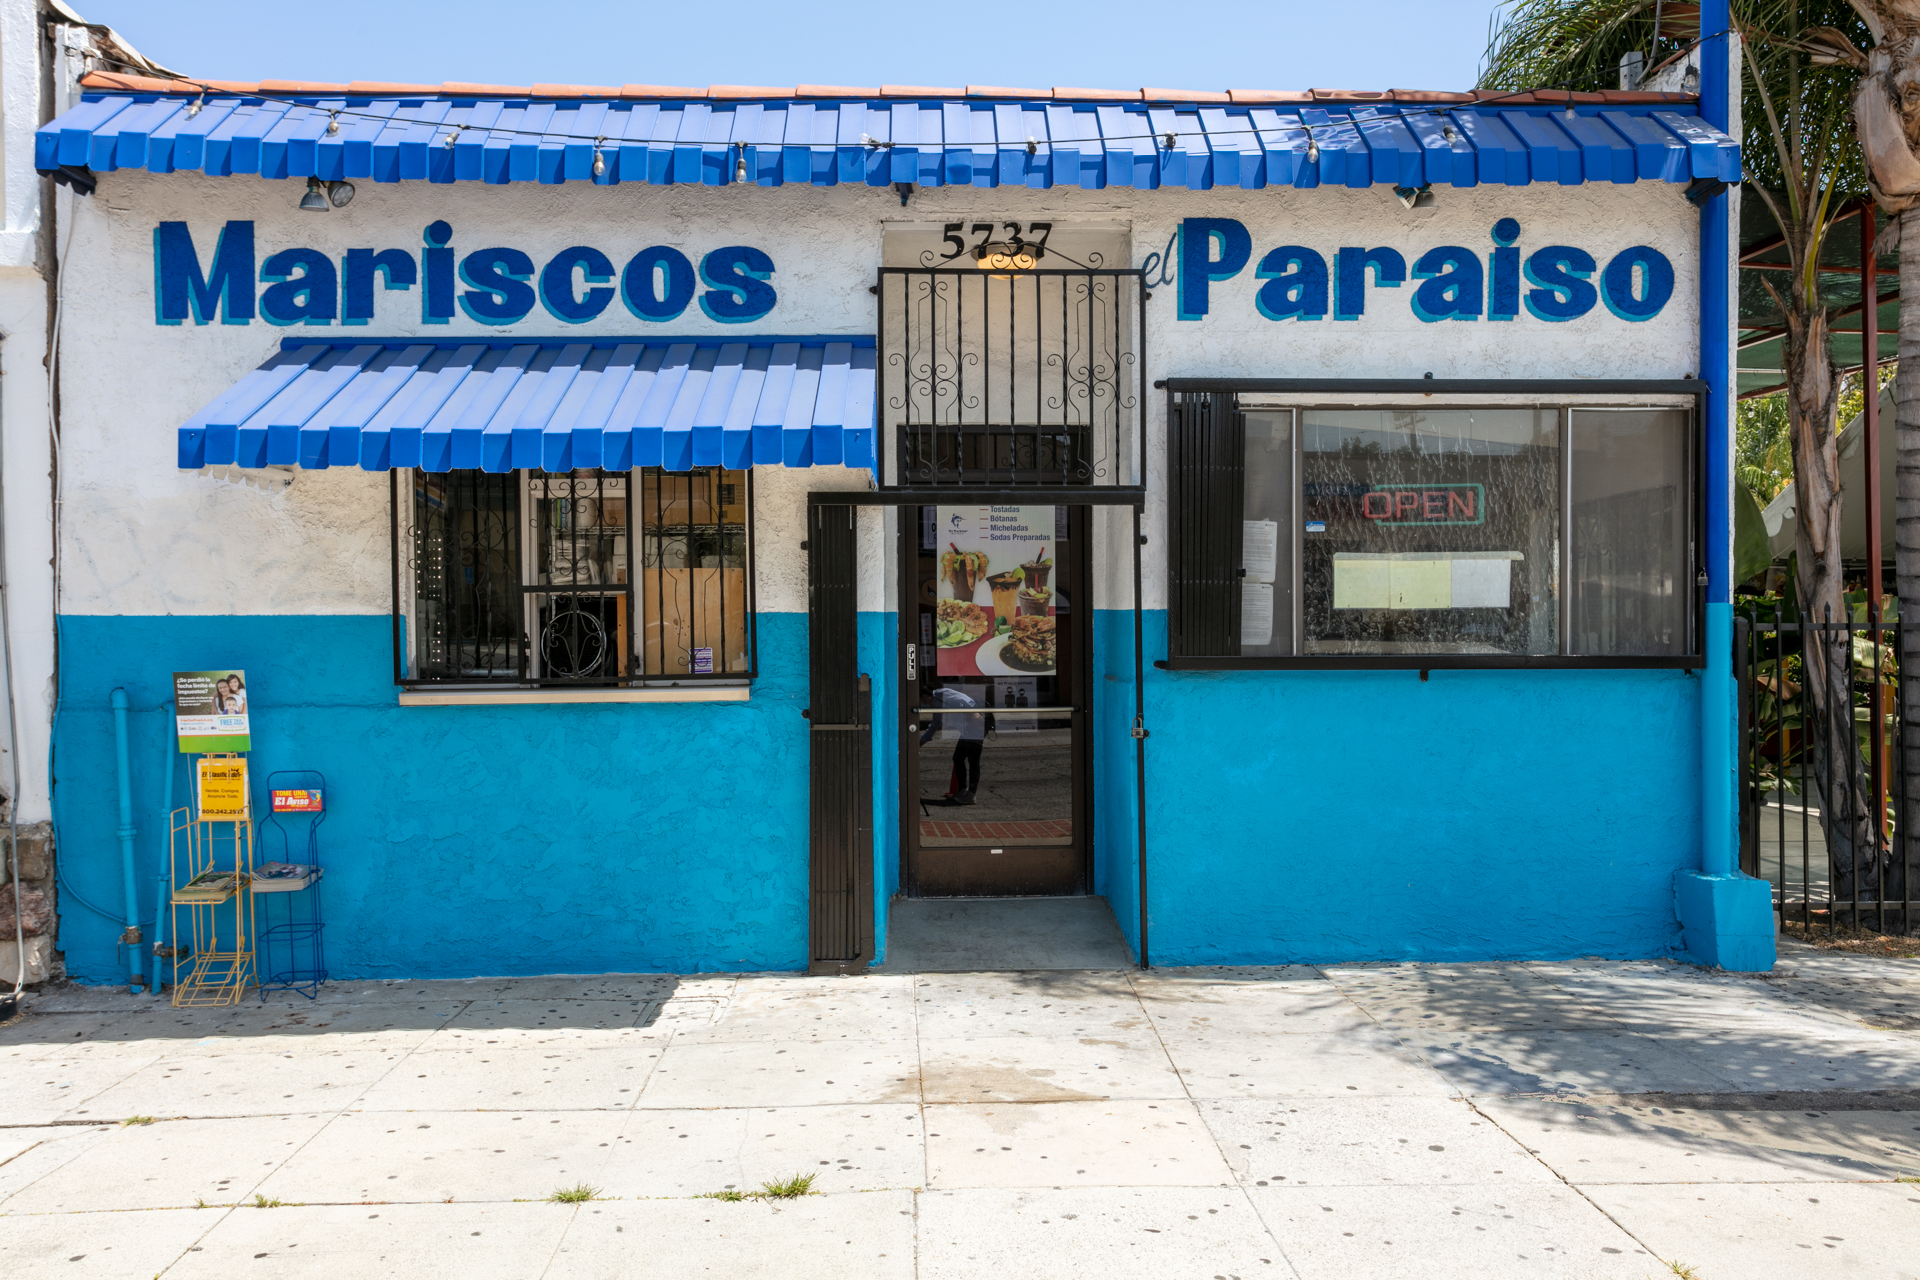 About - Mariscos - El Paraíso - Seafood Restaurant in Commerce, CA